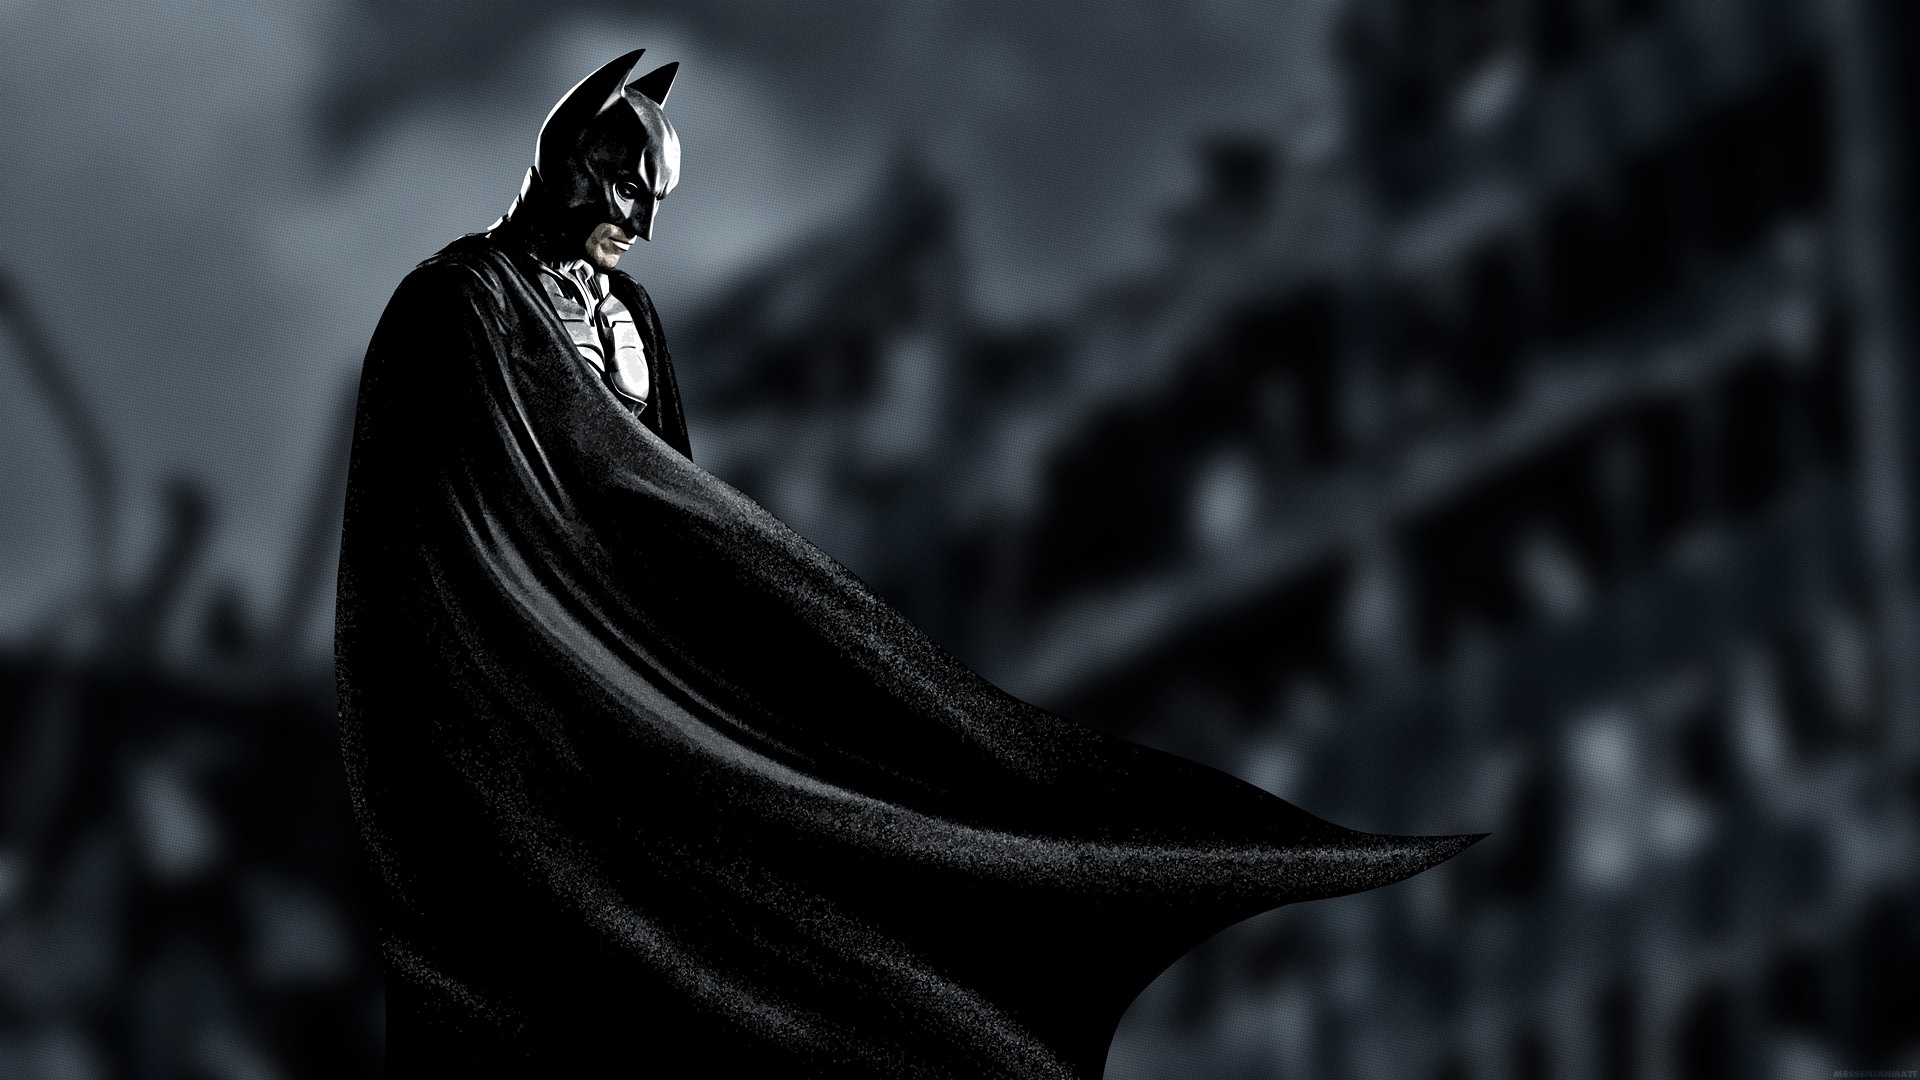 Full View and Download Batman Superheroes Wallpaper 3